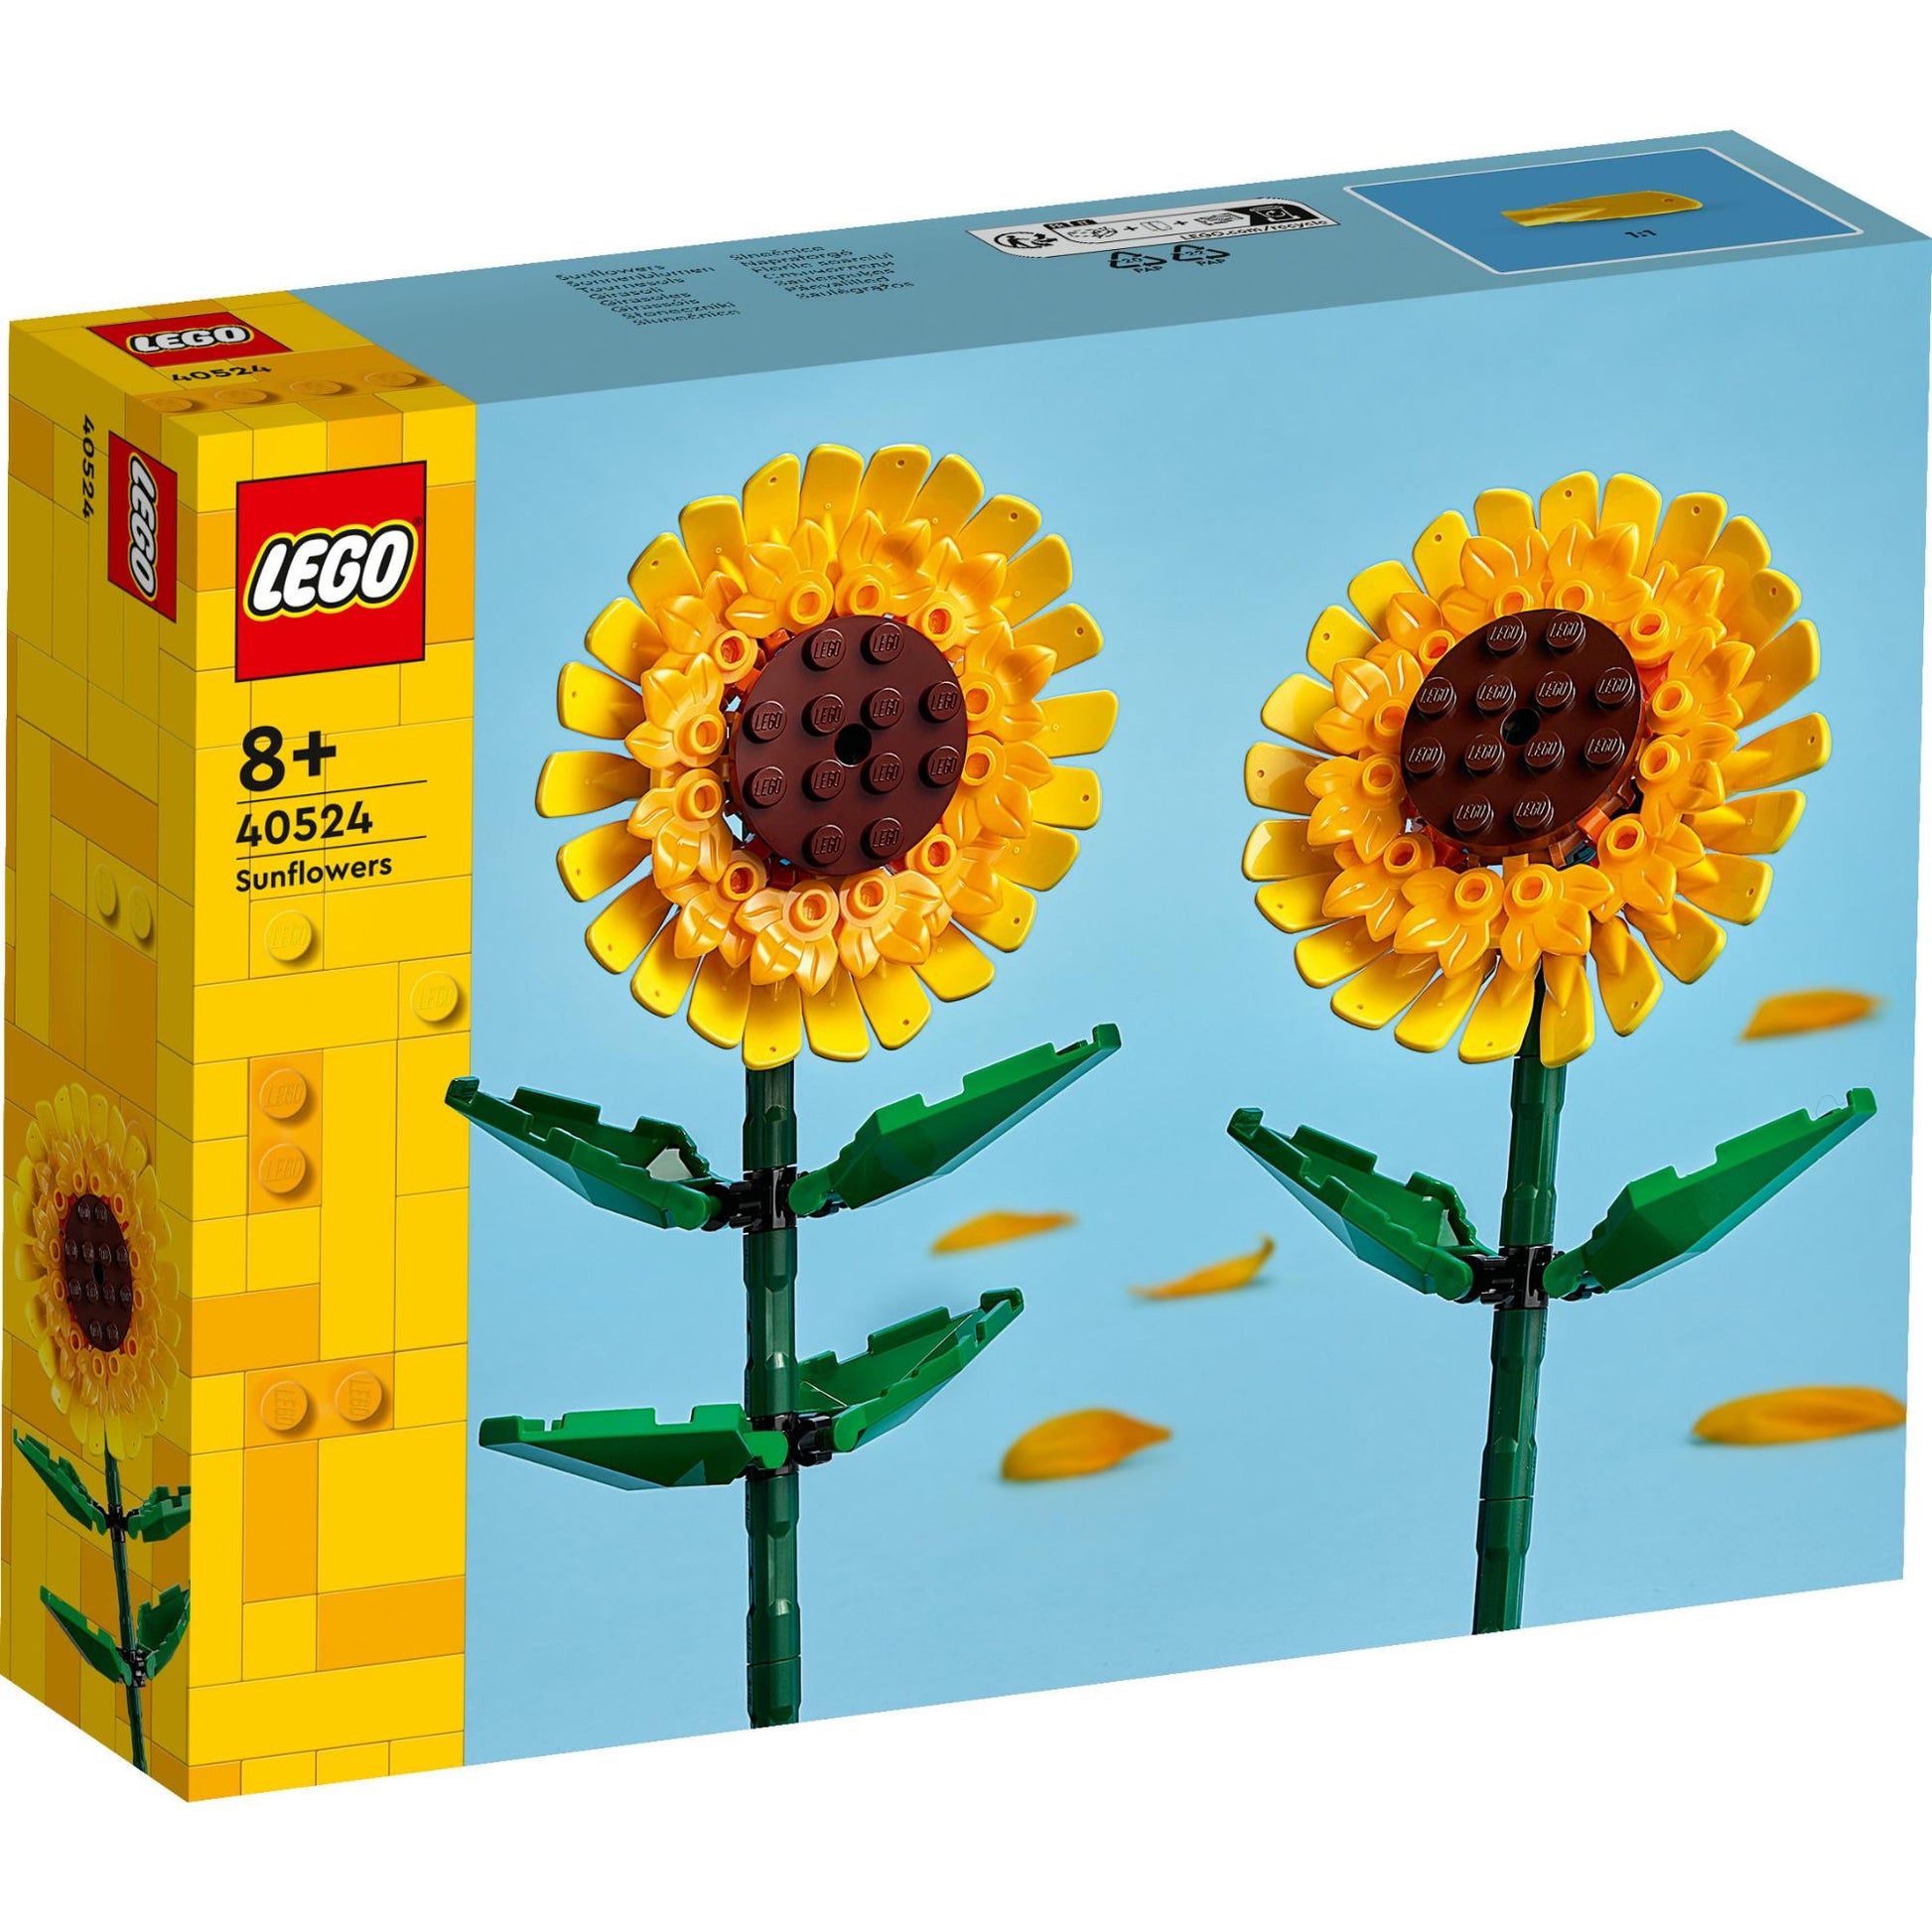 Copy of LEL Flowers - Sunflowers